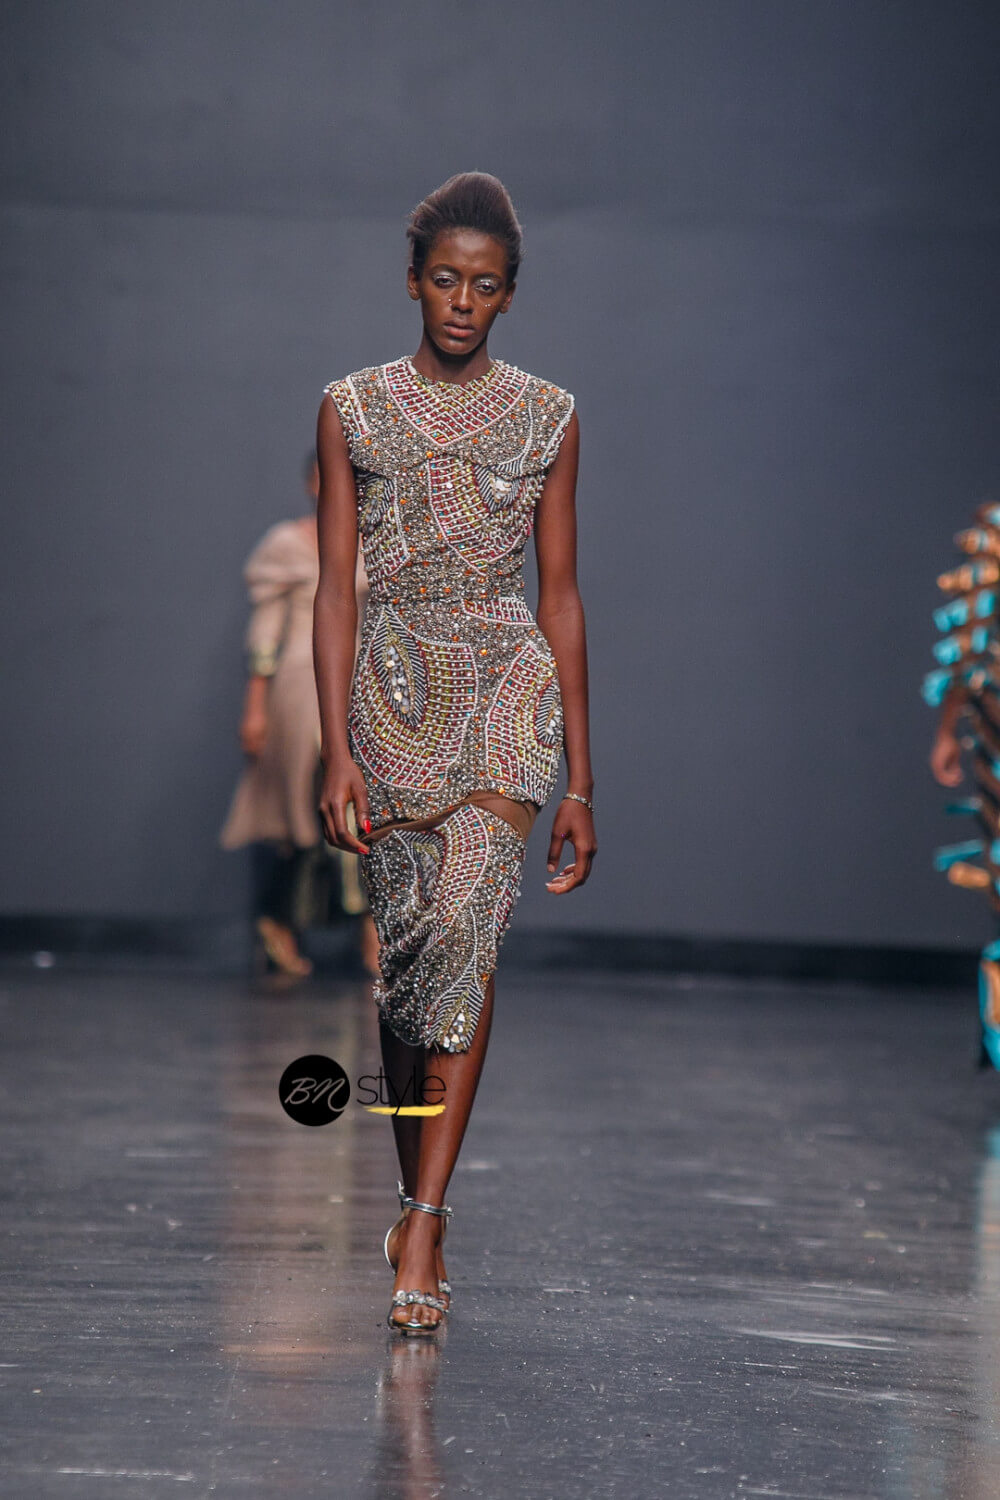 Lagos fashion week